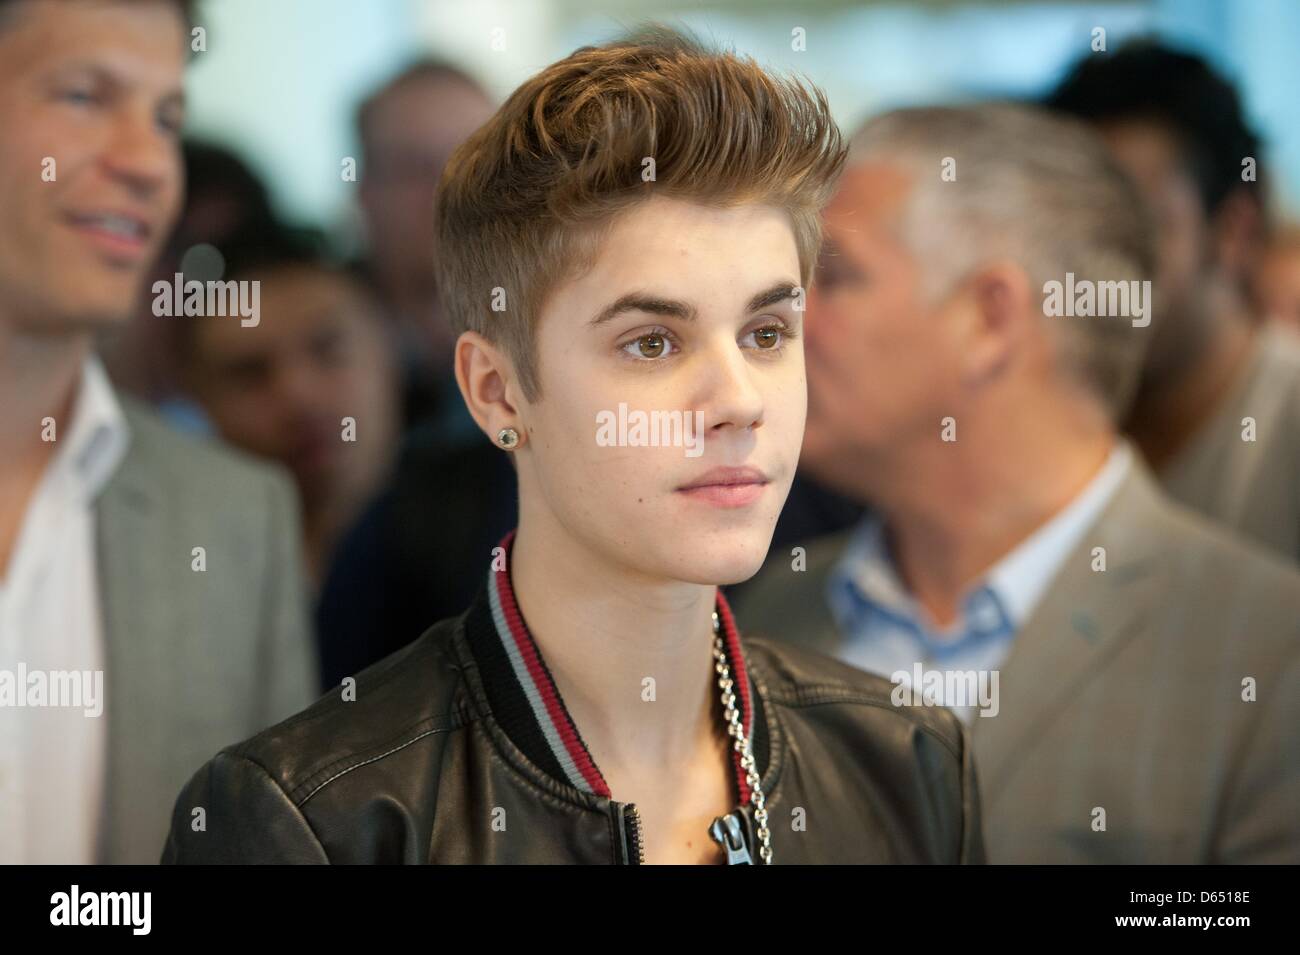 La pop star Justin Bieber stand durante la sua visita alla redazione di 'Bild' a Berlino, Germania, 08 giugno 2012. Il cantante canadese è in tournée in Europa al momento per sostenere il suo nuovo album "credere", che va in vendita in Germania il 15 giugno. Foto: SEBASTIAN KAHNERT Foto Stock